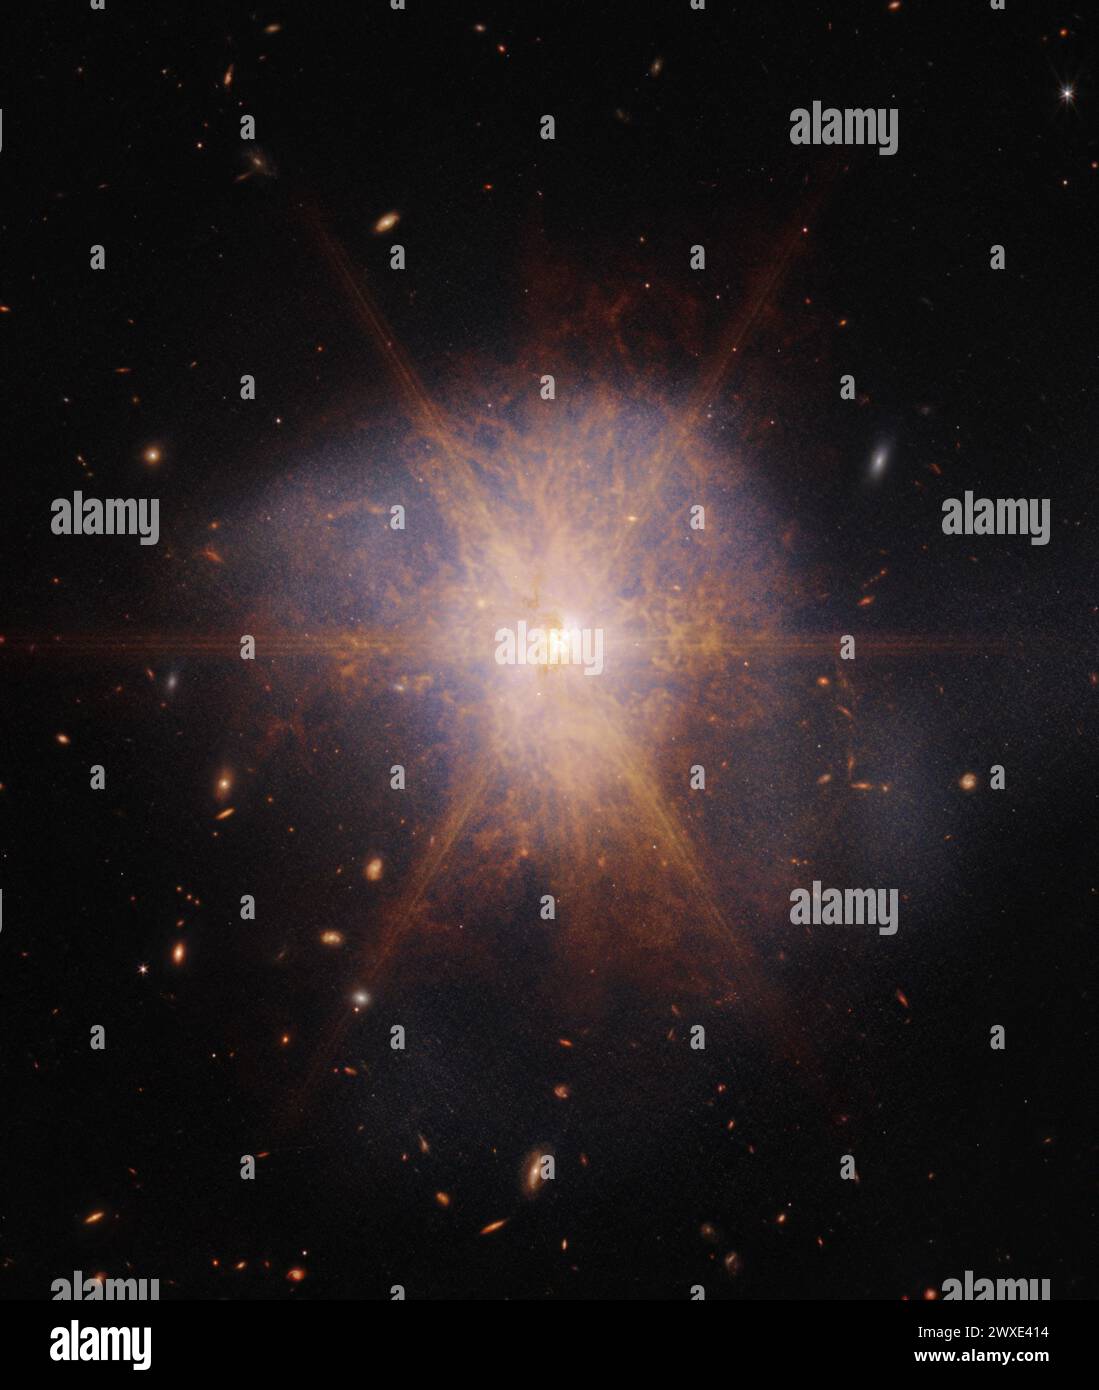 ARP 220, una galassia infrarossa ultraluminosa (ULIRG) con una luminosità letteralmente maggiore di quella di un trilione di soli. ARP 220 si illumina di luce infrarossa, la specialità di Webb. Questo oggetto è il risultato di una collisione tra 2 galassie a spirale iniziata circa 700 metri fa, scatenando un'enorme esplosione di formazione stellare. La luce di questa formazione stellare è avvolta dalla polvere, che Webb può vedere attraverso la sua visione a infrarossi. Situato a 250 milioni di anni luce di distanza, ARP 220 è sia la più vicina ULIRG che la più luminosa delle 3 fusioni galattiche più vicine a noi.credito: NASA Foto Stock